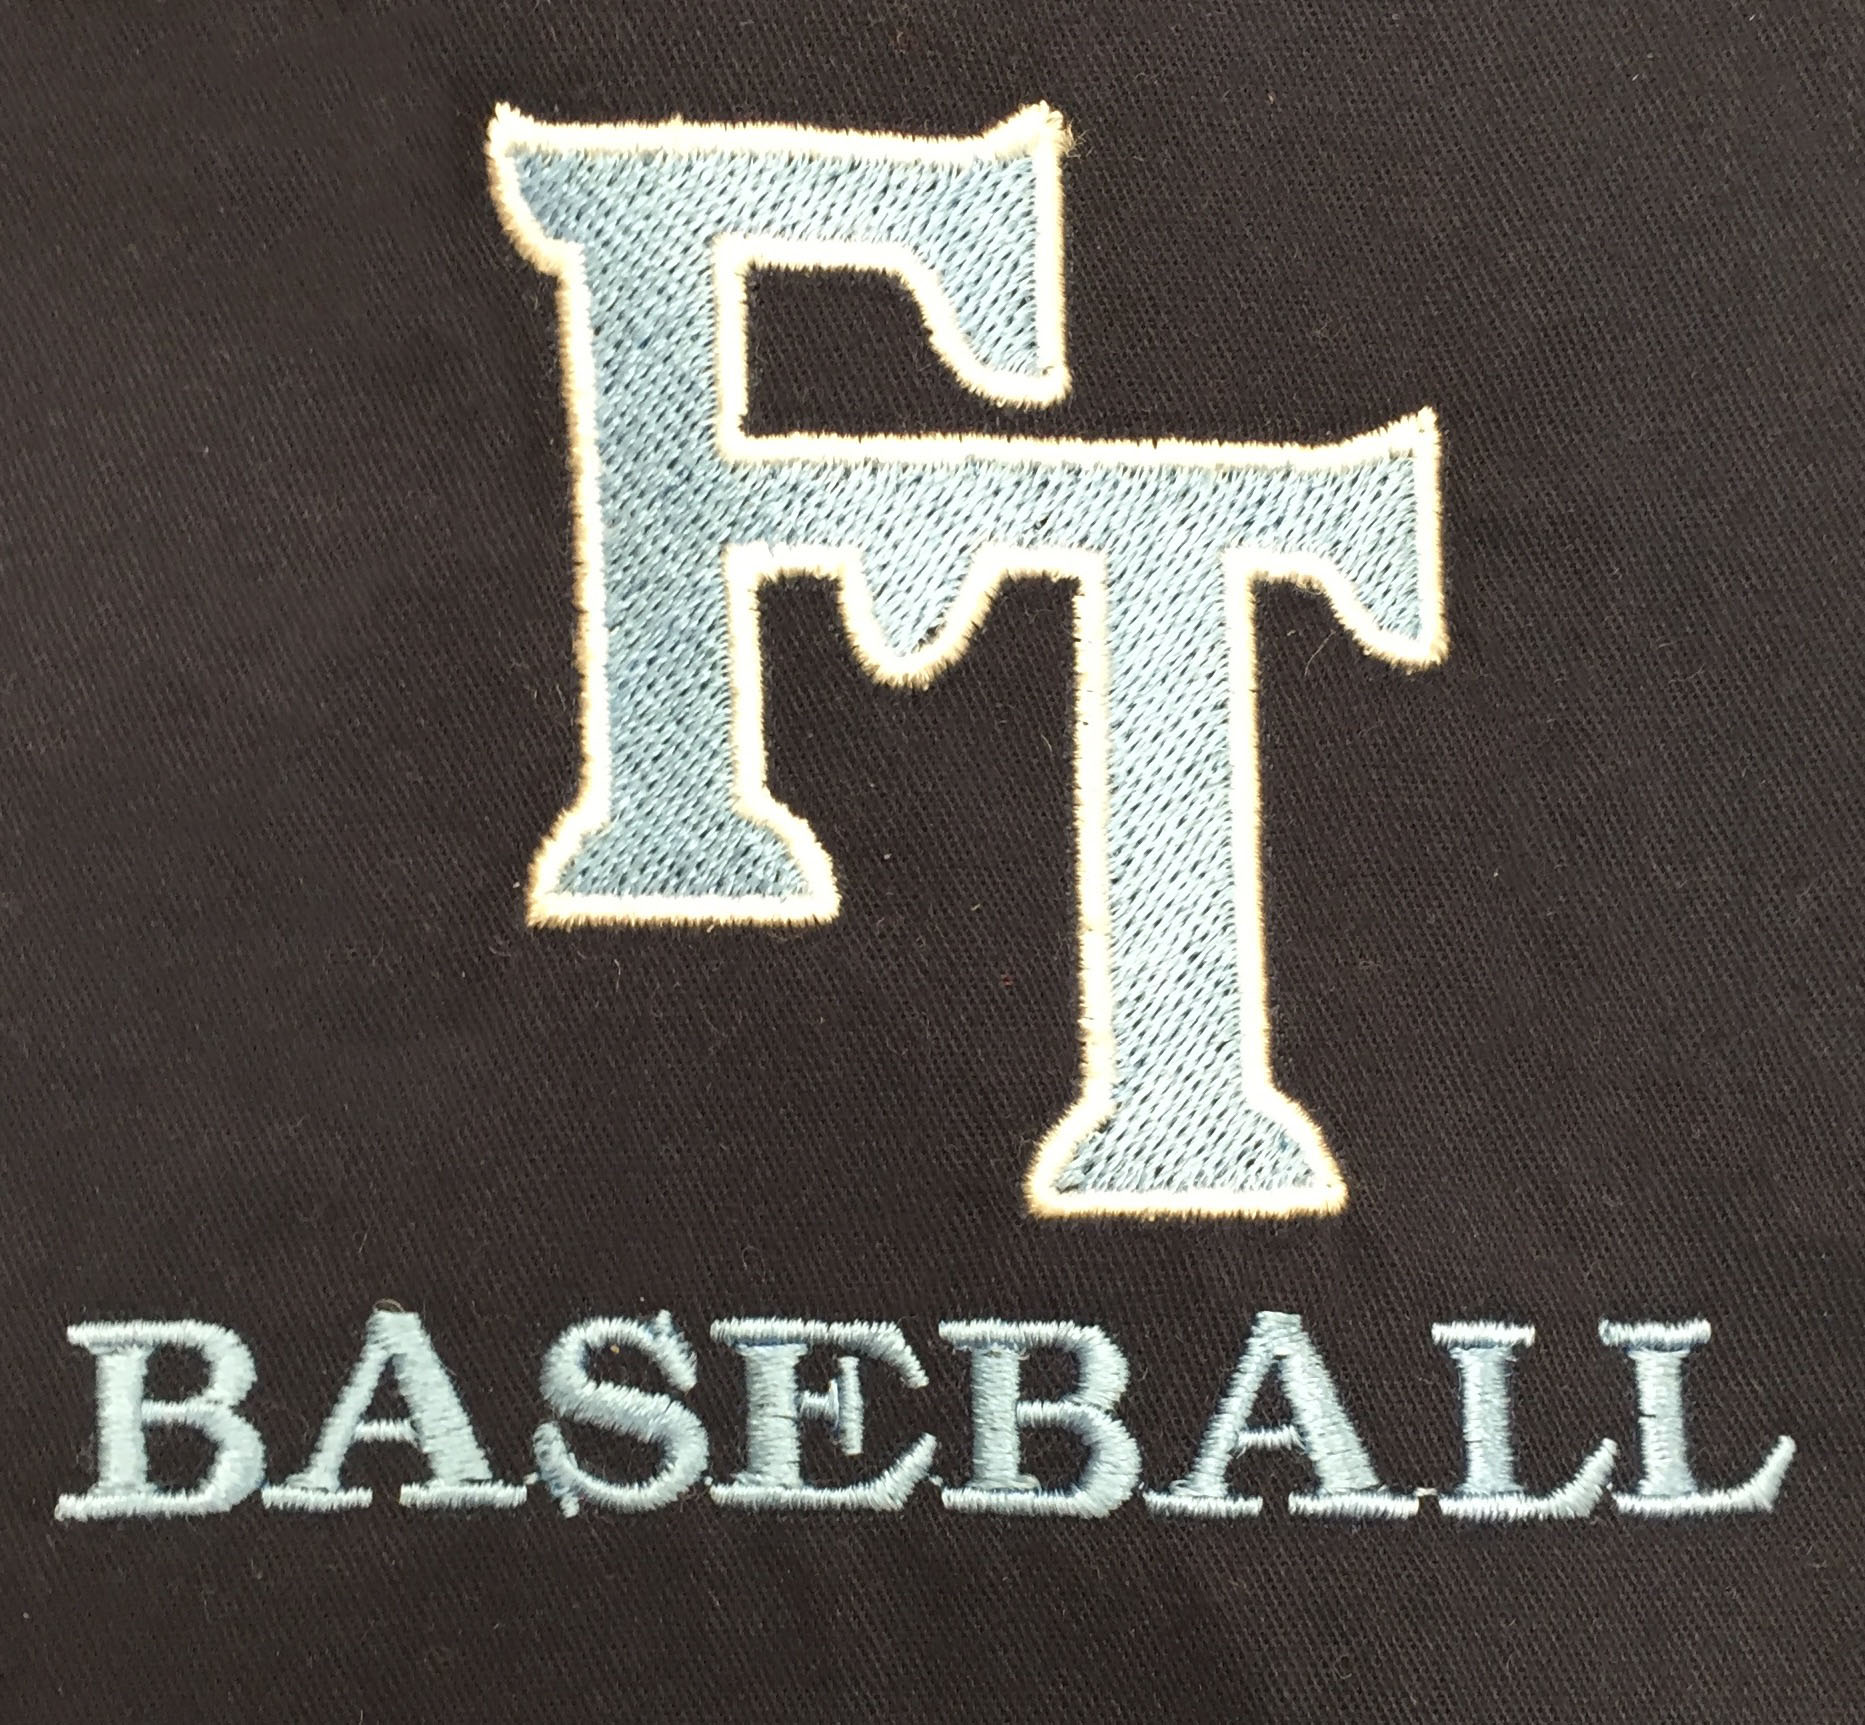 Baseball Team Apparel-Garden State Embroidery-Cherry Hill-New Jersey-Team Gear.JPG